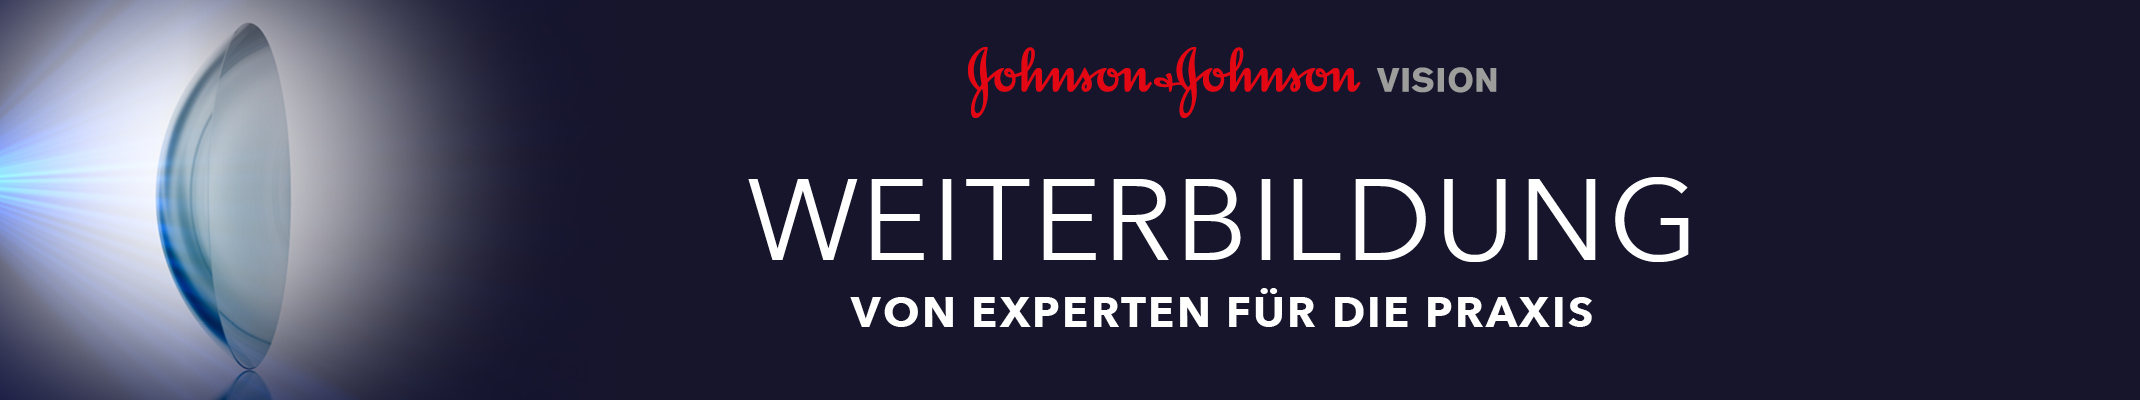 Johnson & Johnson Vision Weiterbildung 